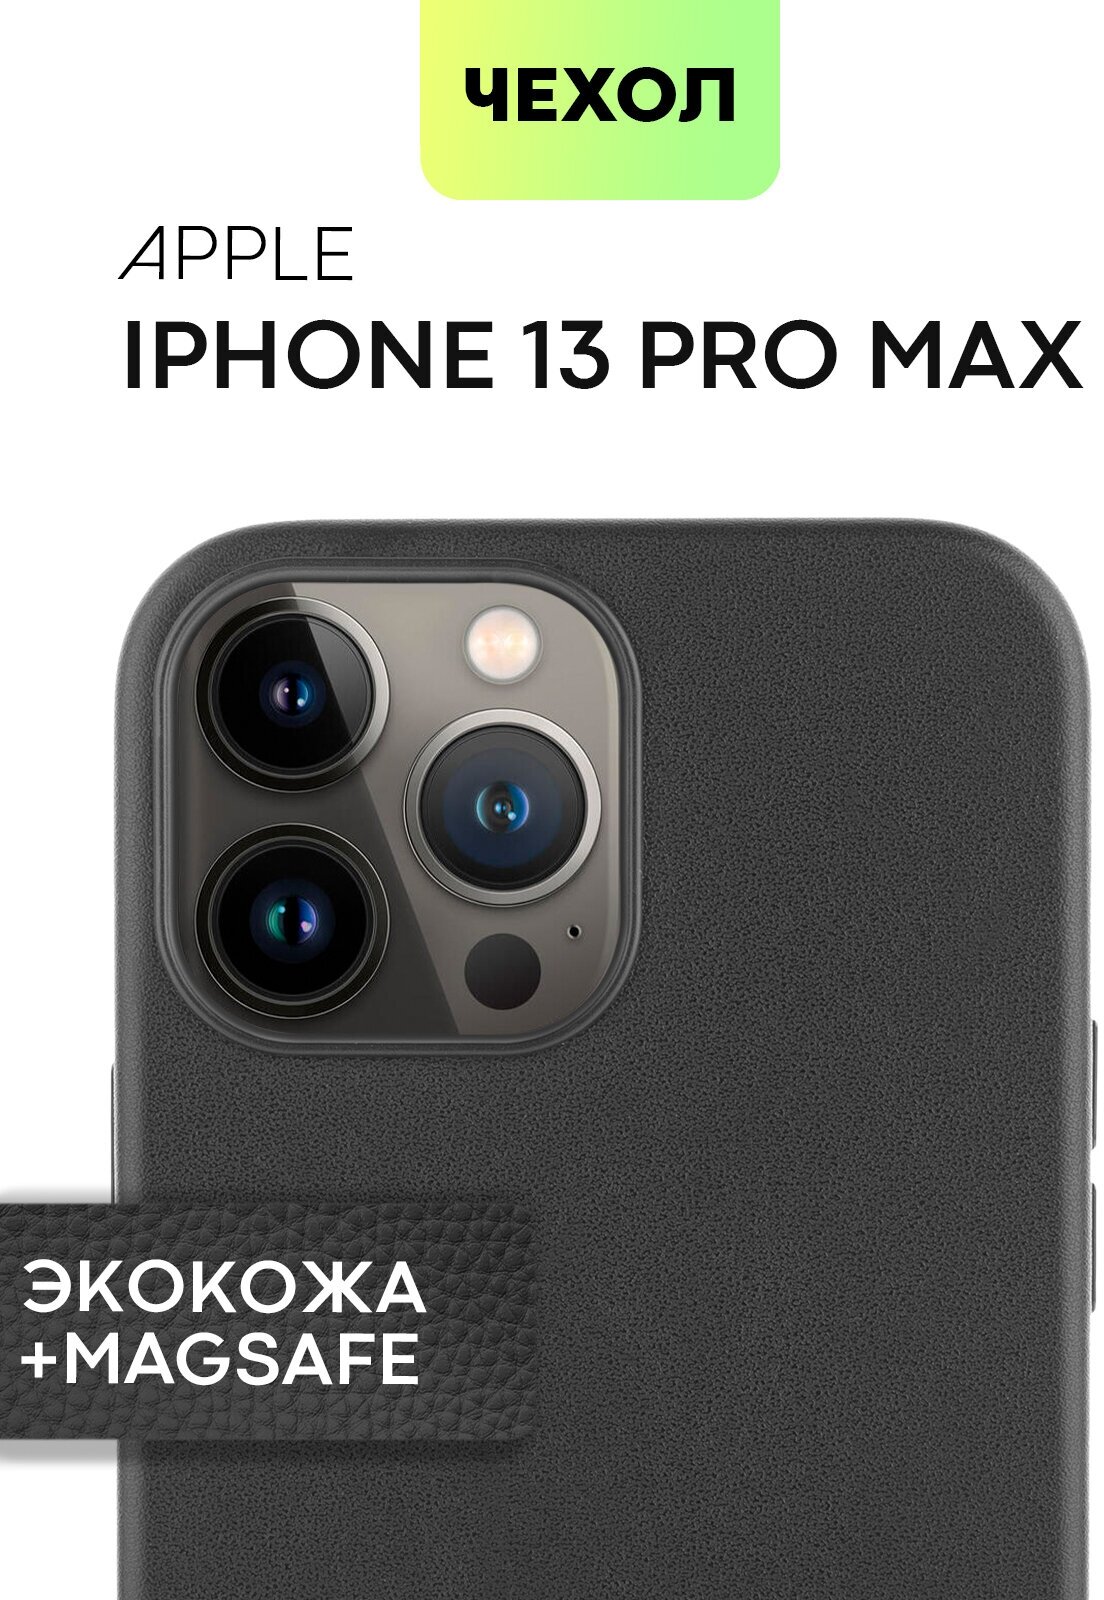 Кожаный чехол MagSafe для Apple iPhone 13 Pro Max (Эпл Айфон 13 Про Макс) защита дисплея, блока камер и микрофиброй (мягкая подкладка), черная экокожа